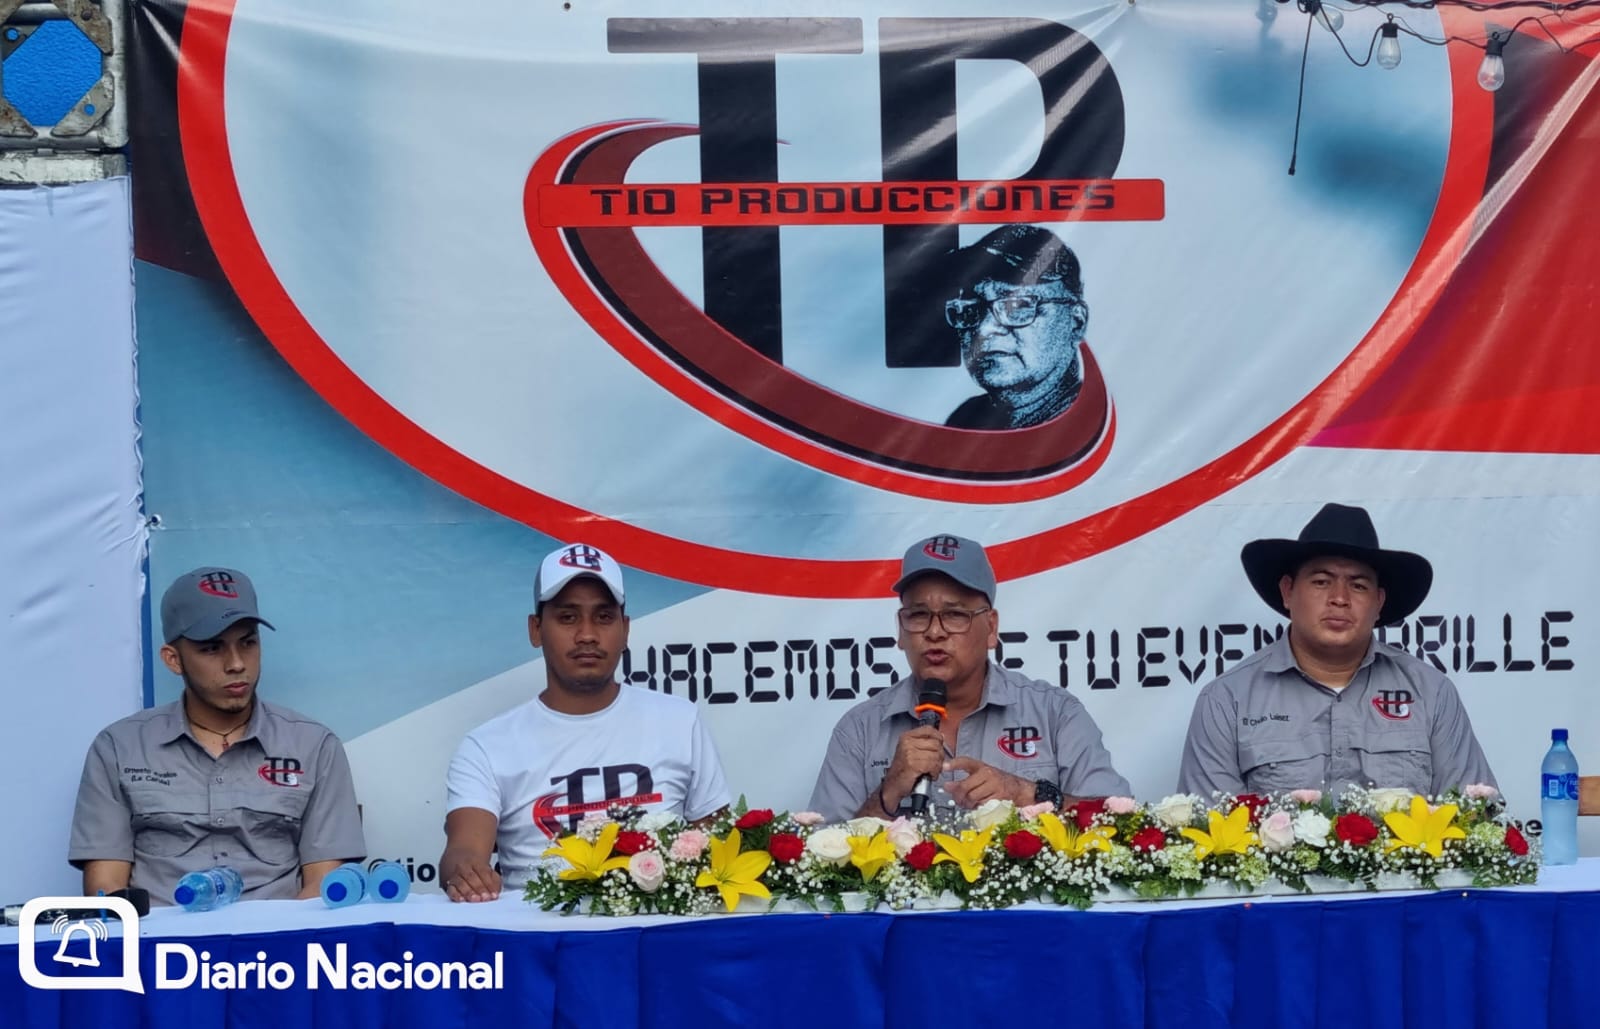 Nueva Productora de eventos en Nicaragua «Tio Producciones»